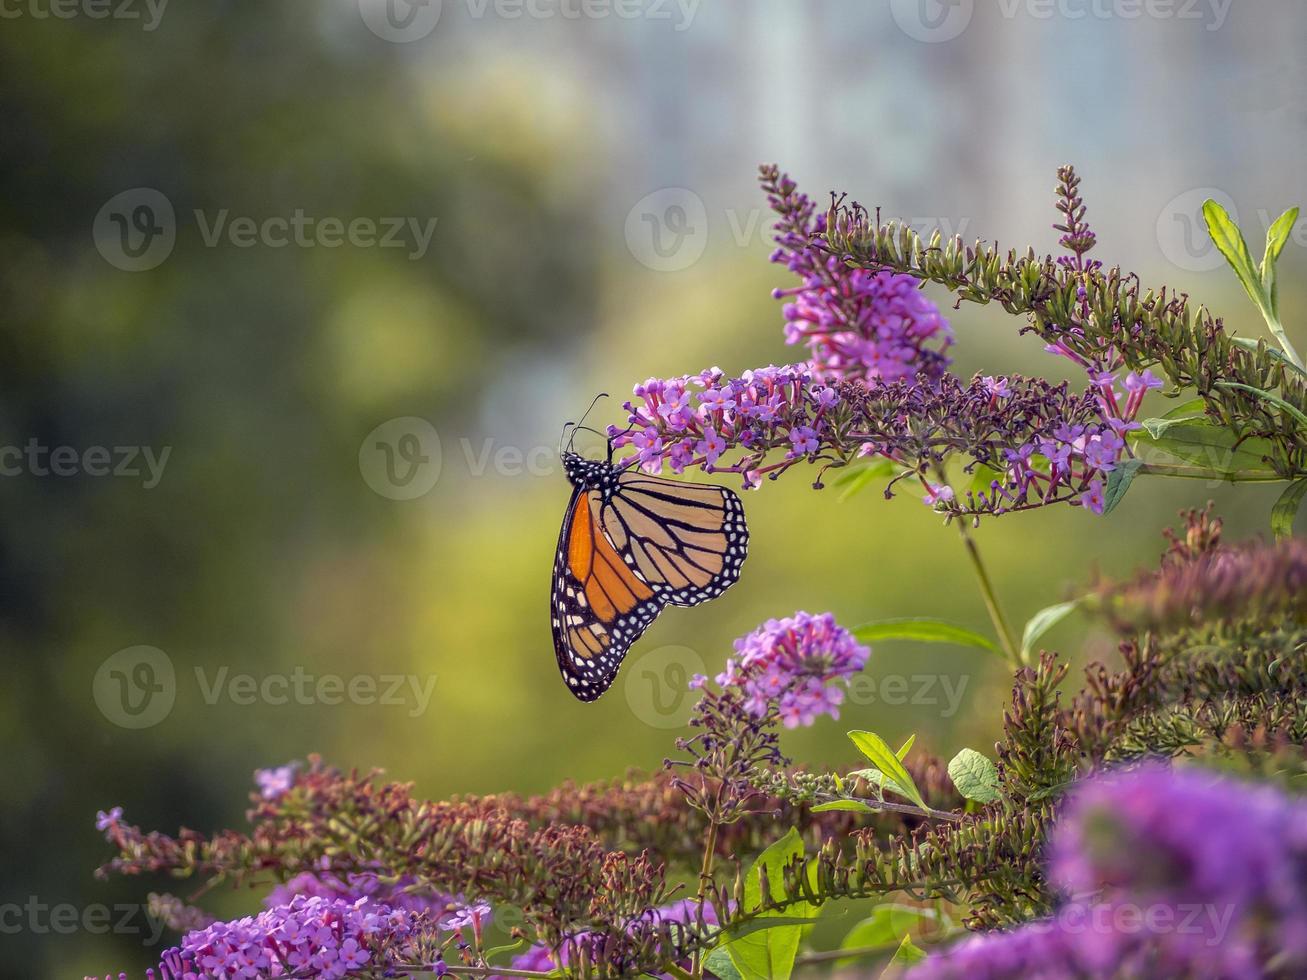 borboleta monarca, danaus plexippus, foto